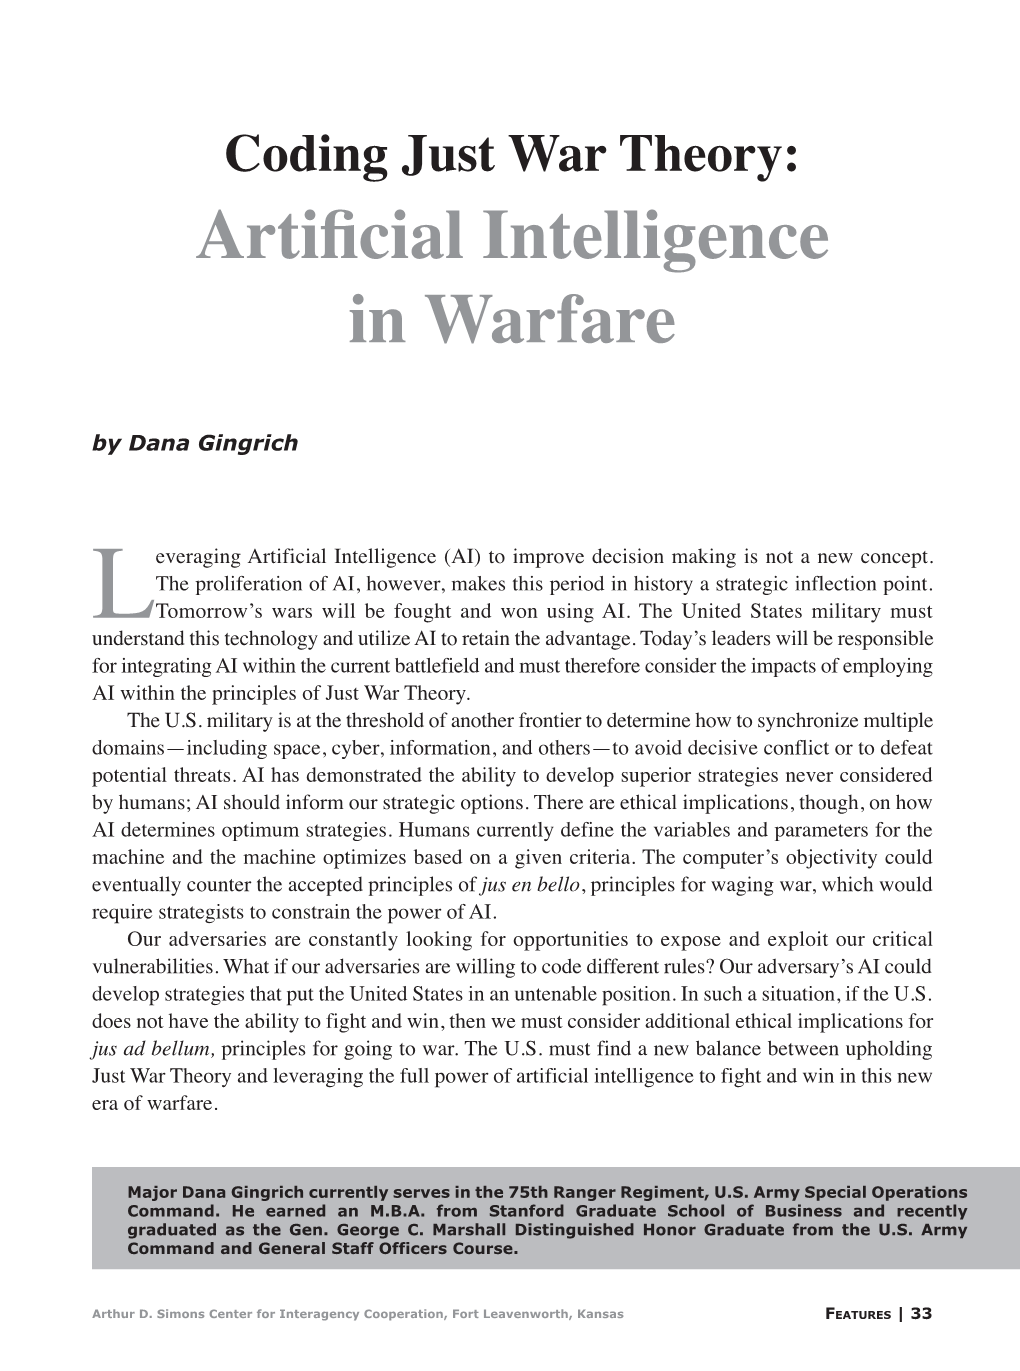 Artificial Intelligence in Warfare by Dana Gingrich